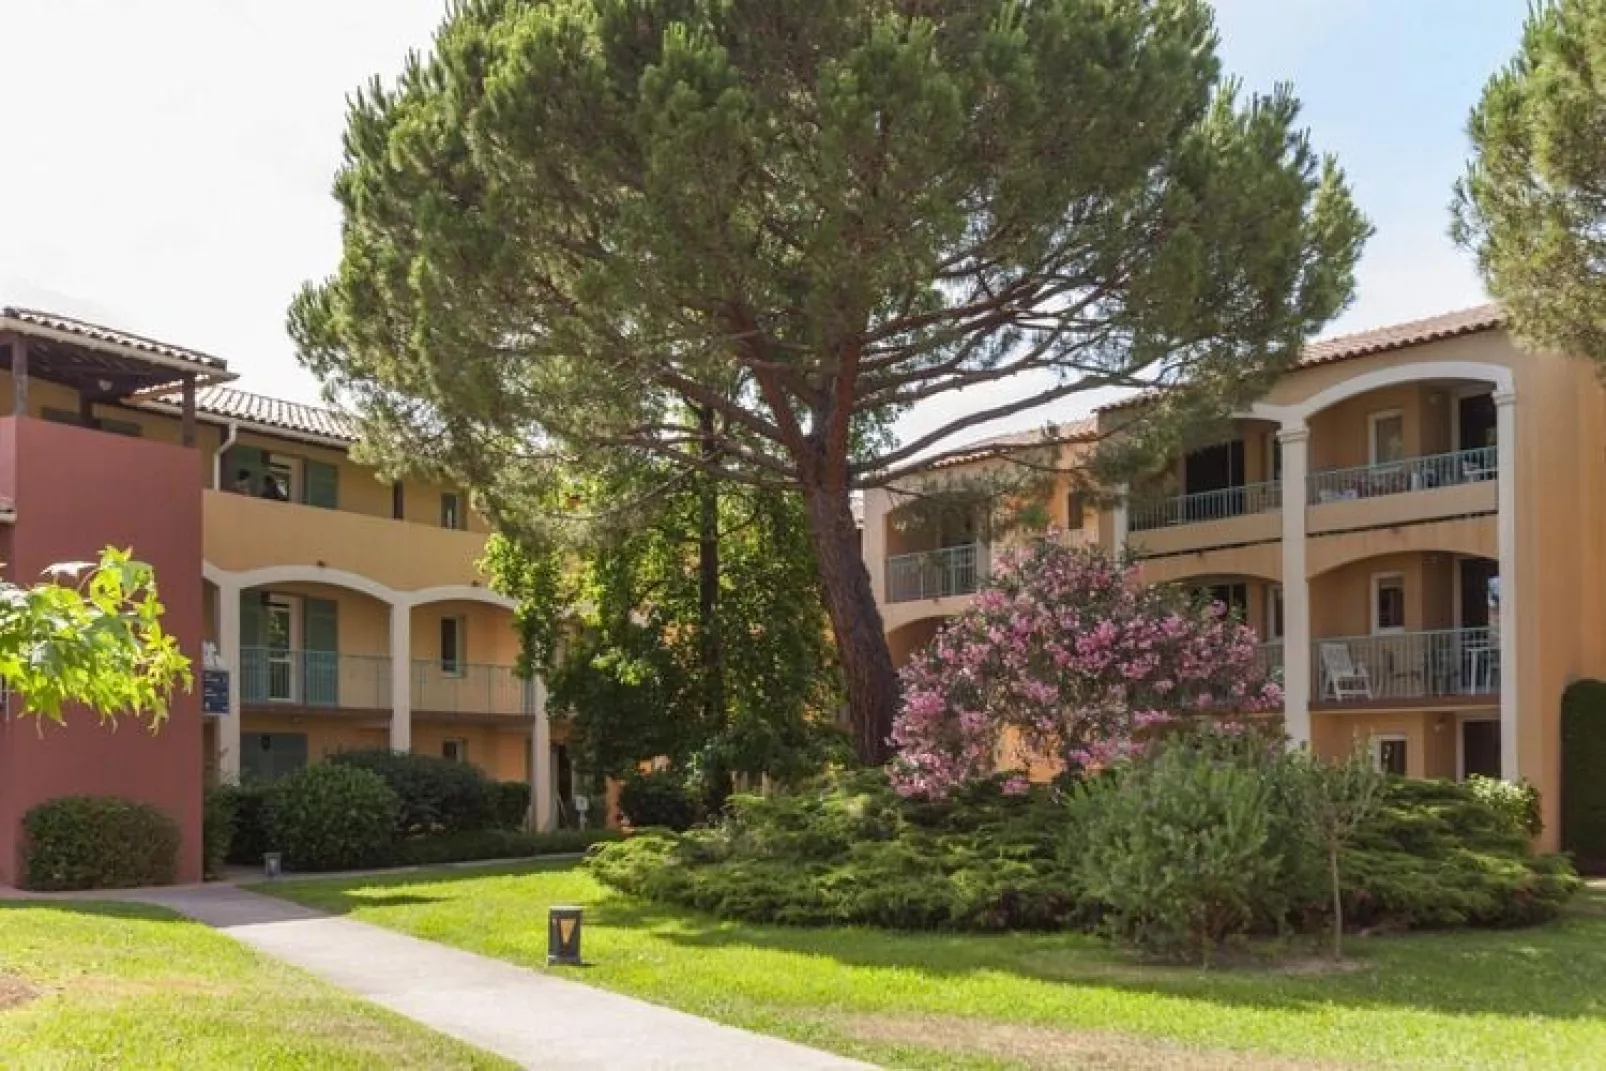 Residence Les Rives de Cannes Mandelieu Mandelieu-la-Napoule 36 Standard - Apt 6 p - 2 bedrooms-Buitenkant zomer